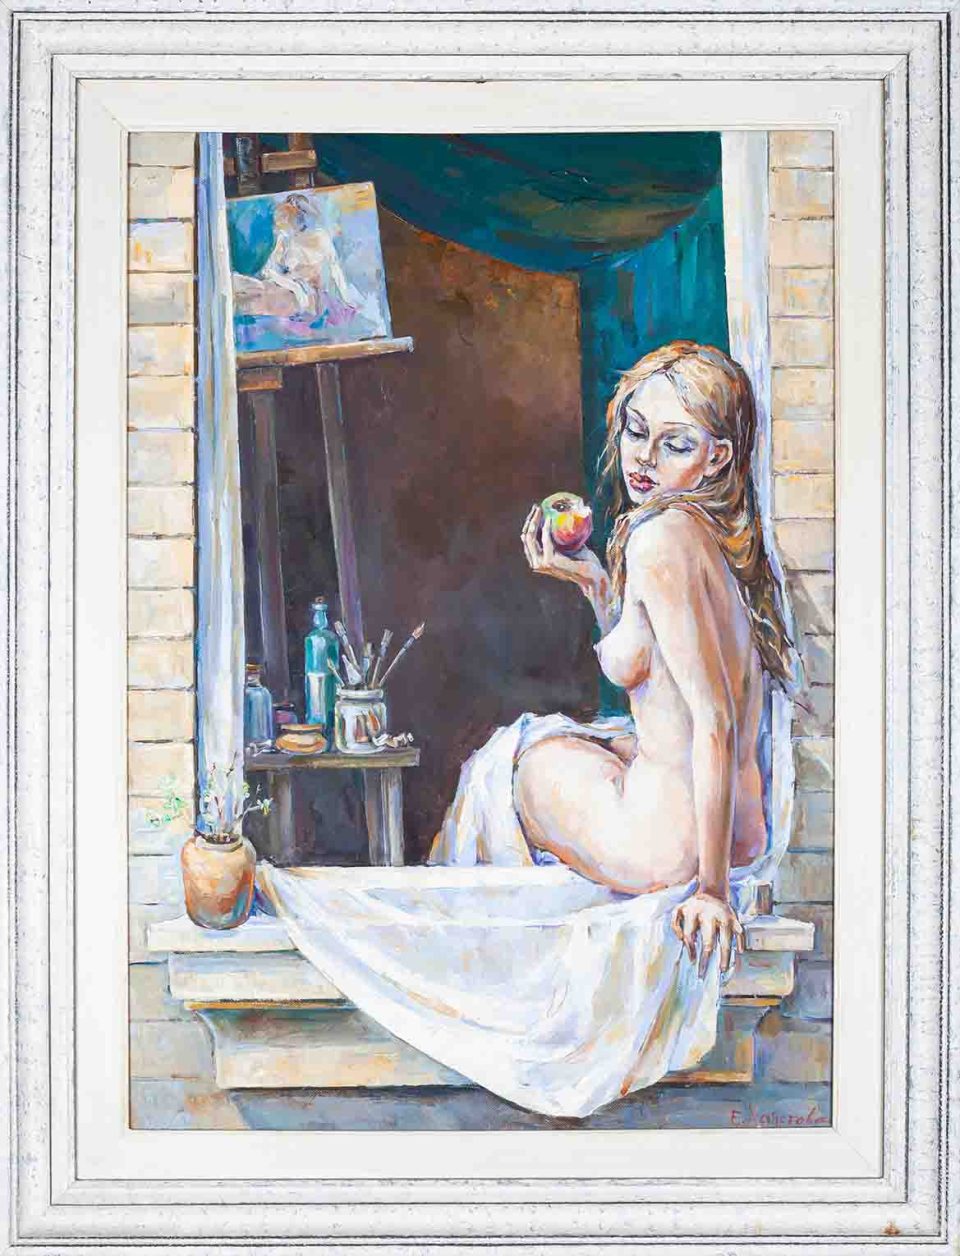 chalatova eleni oil painting, woman in atelier as a model with apple, xalatova eleni , elaiografia se kamva atelie zwgrafikis, gymno montelo